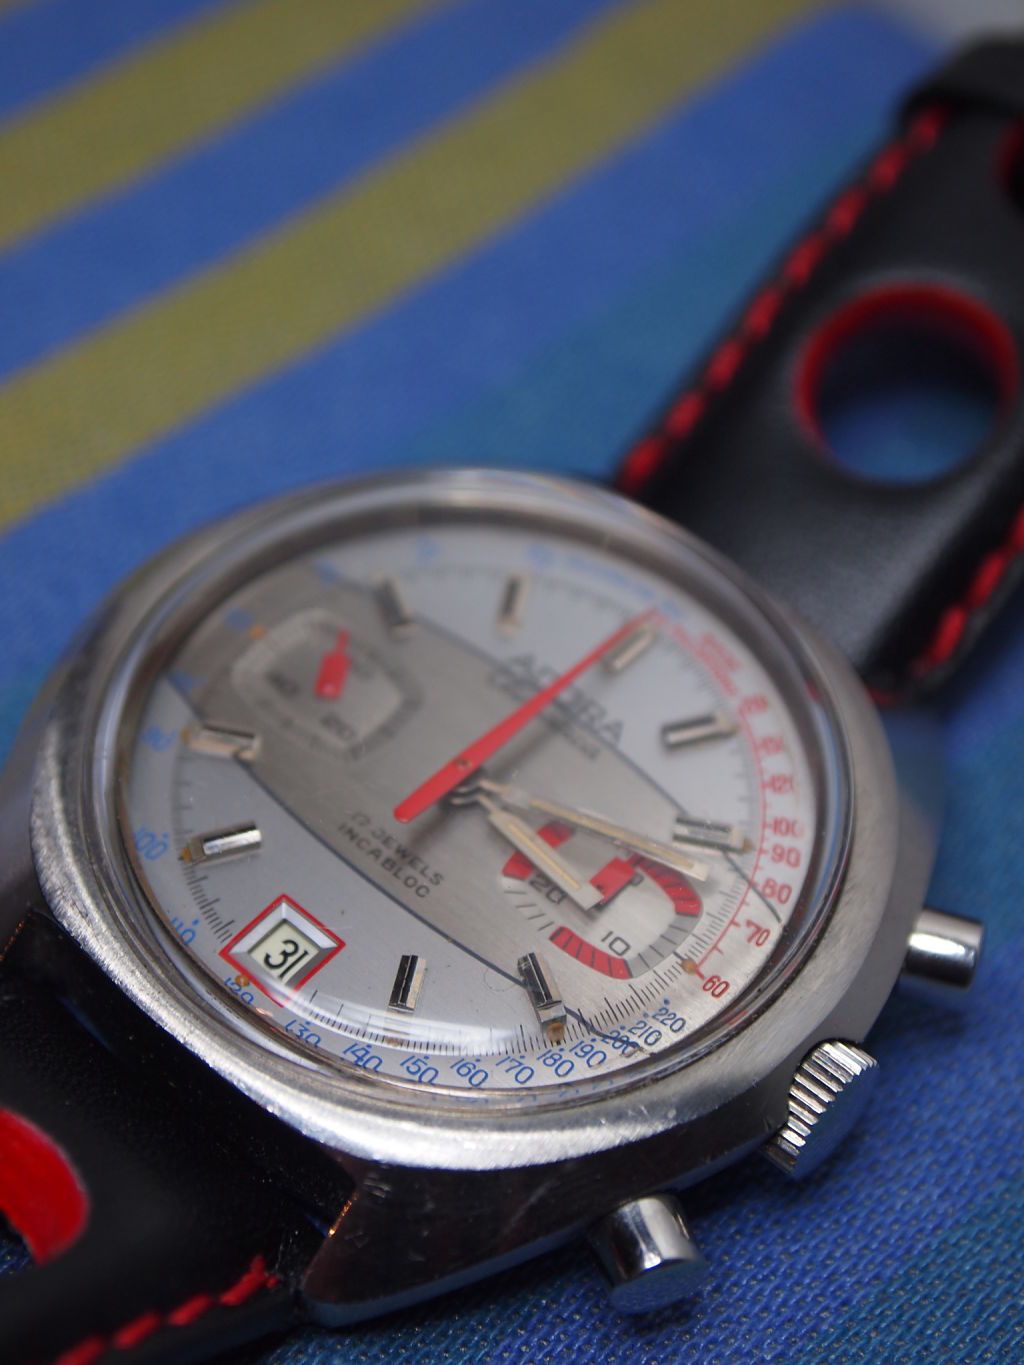 Ongeschikt Gewond raken Competitief Adora komt eerstdaags toe. Wat denken de kenners? - Vintage Horlogeforum -  Horlogeforum.nl - het forum voor liefhebbers van horloges